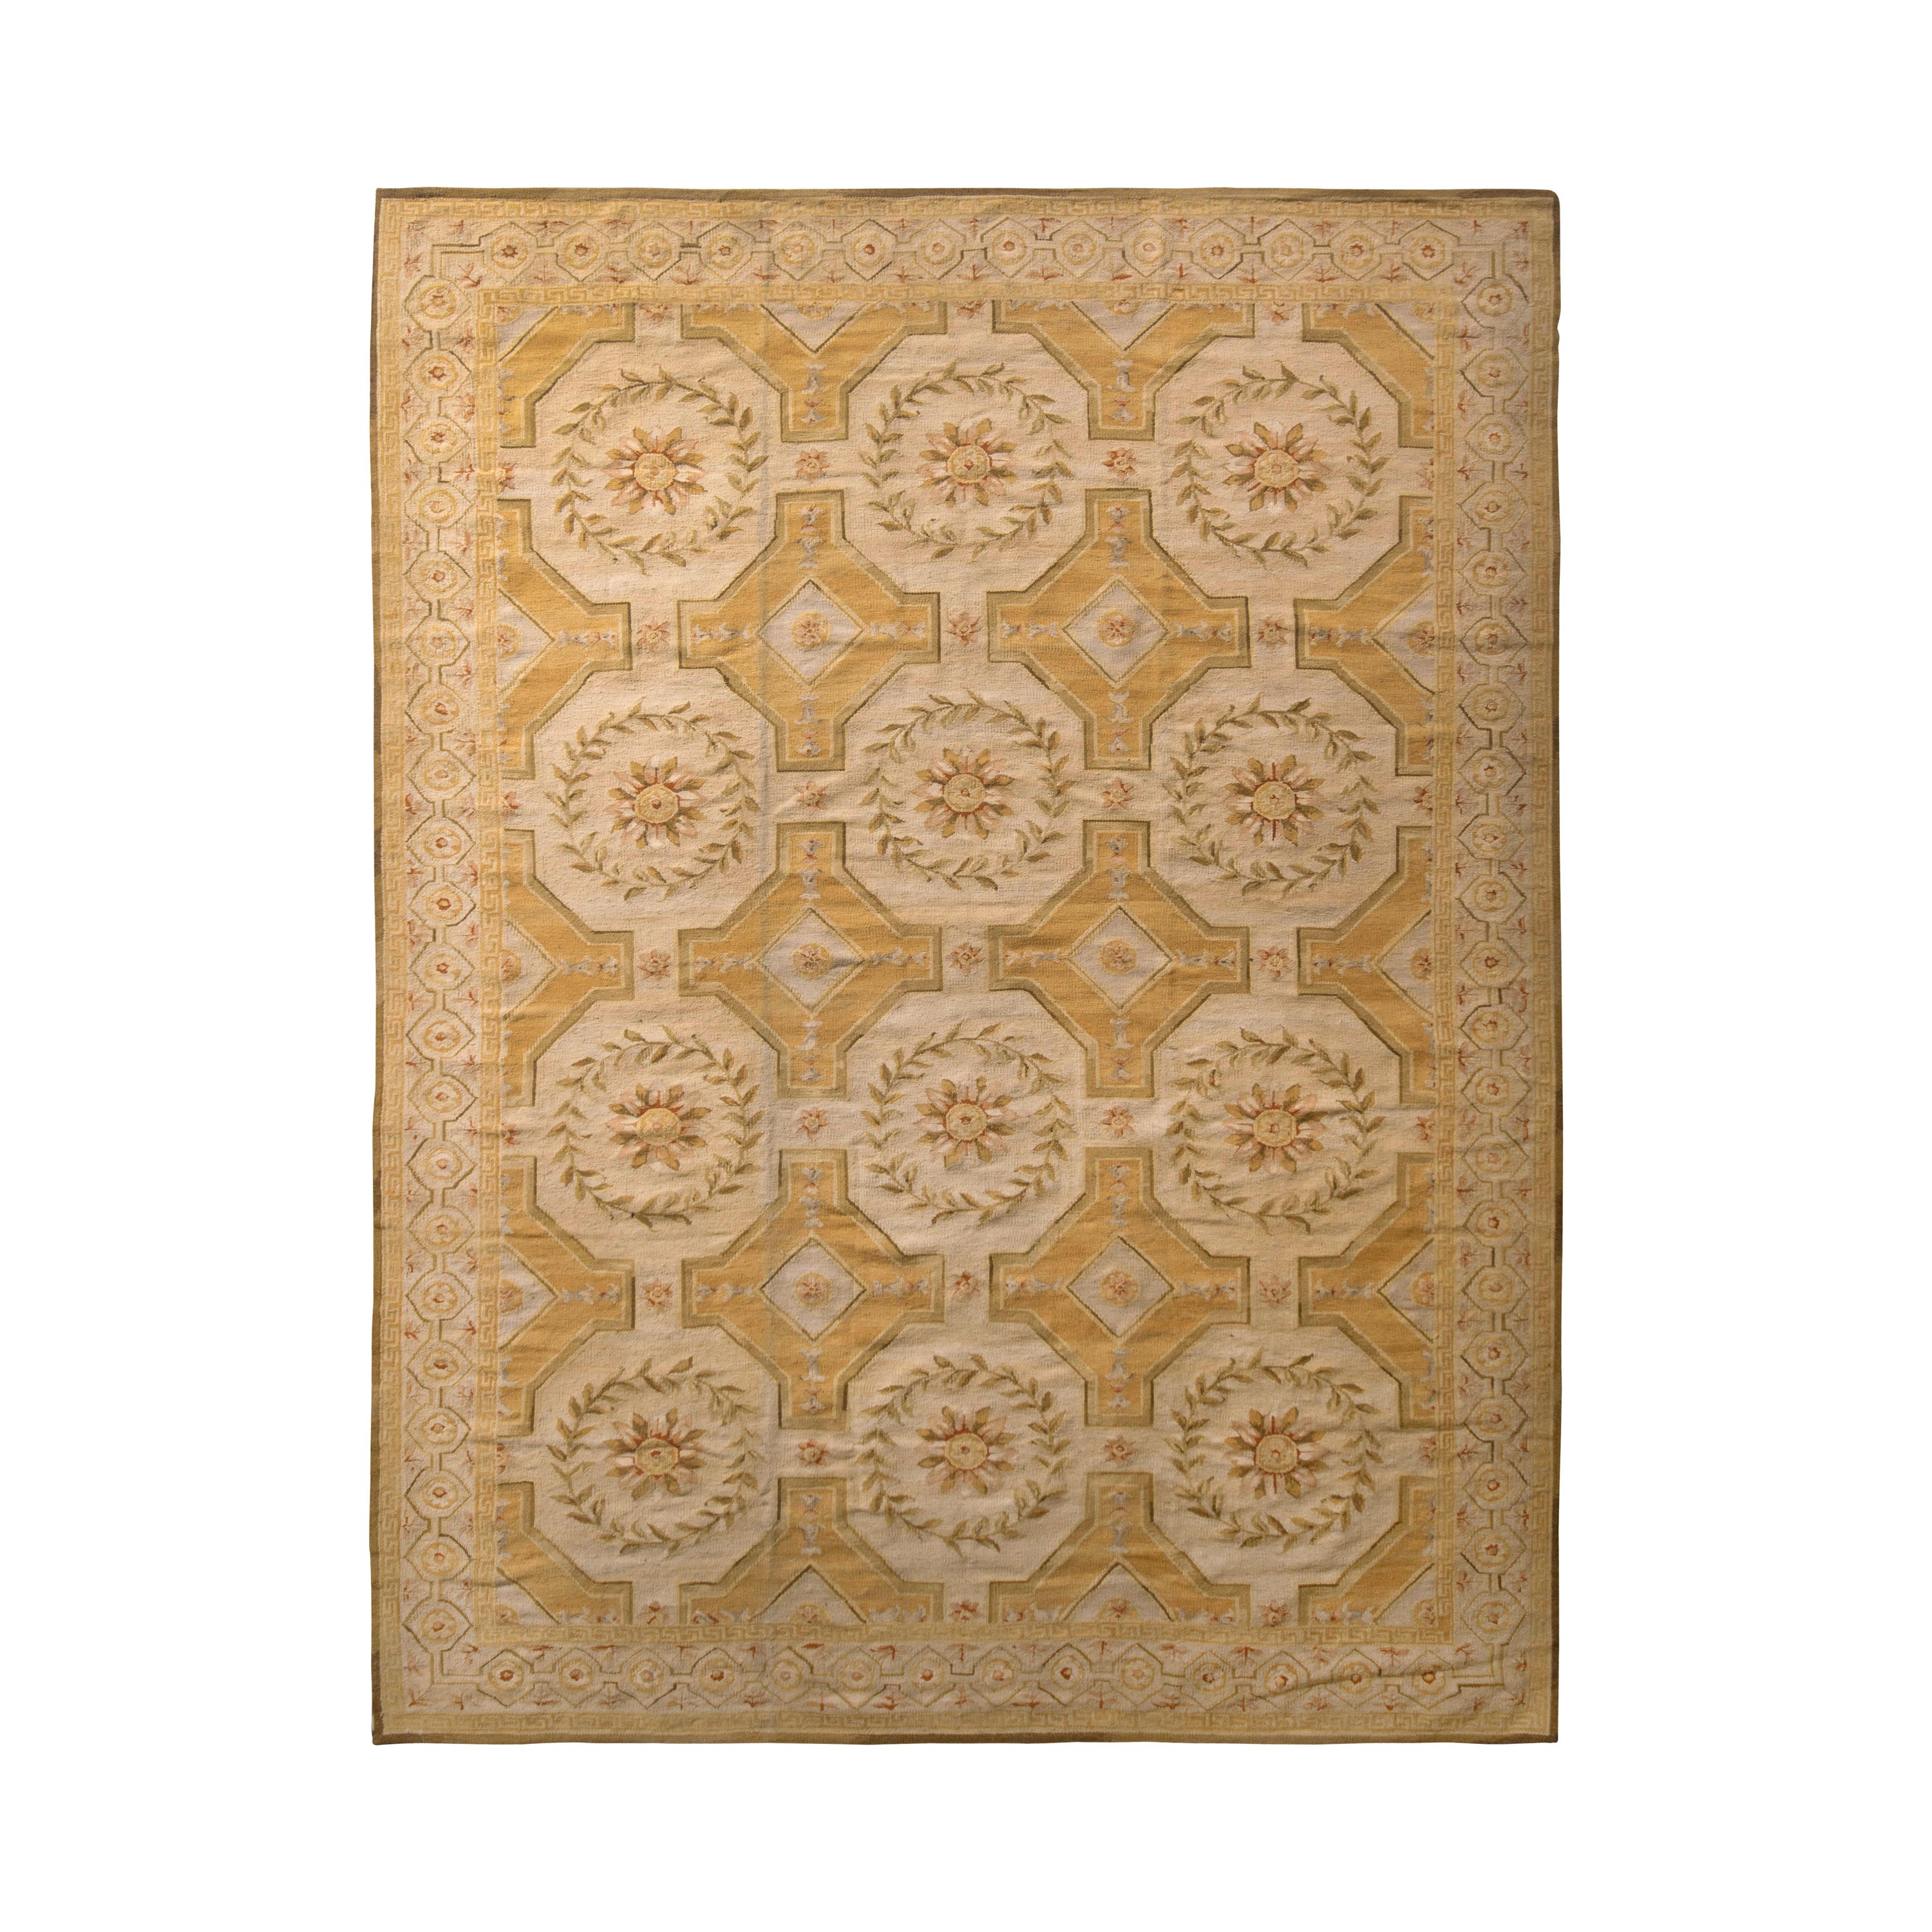 Tapis et motif floral beige-marron à tissage plat de style Aubusson de Kilim